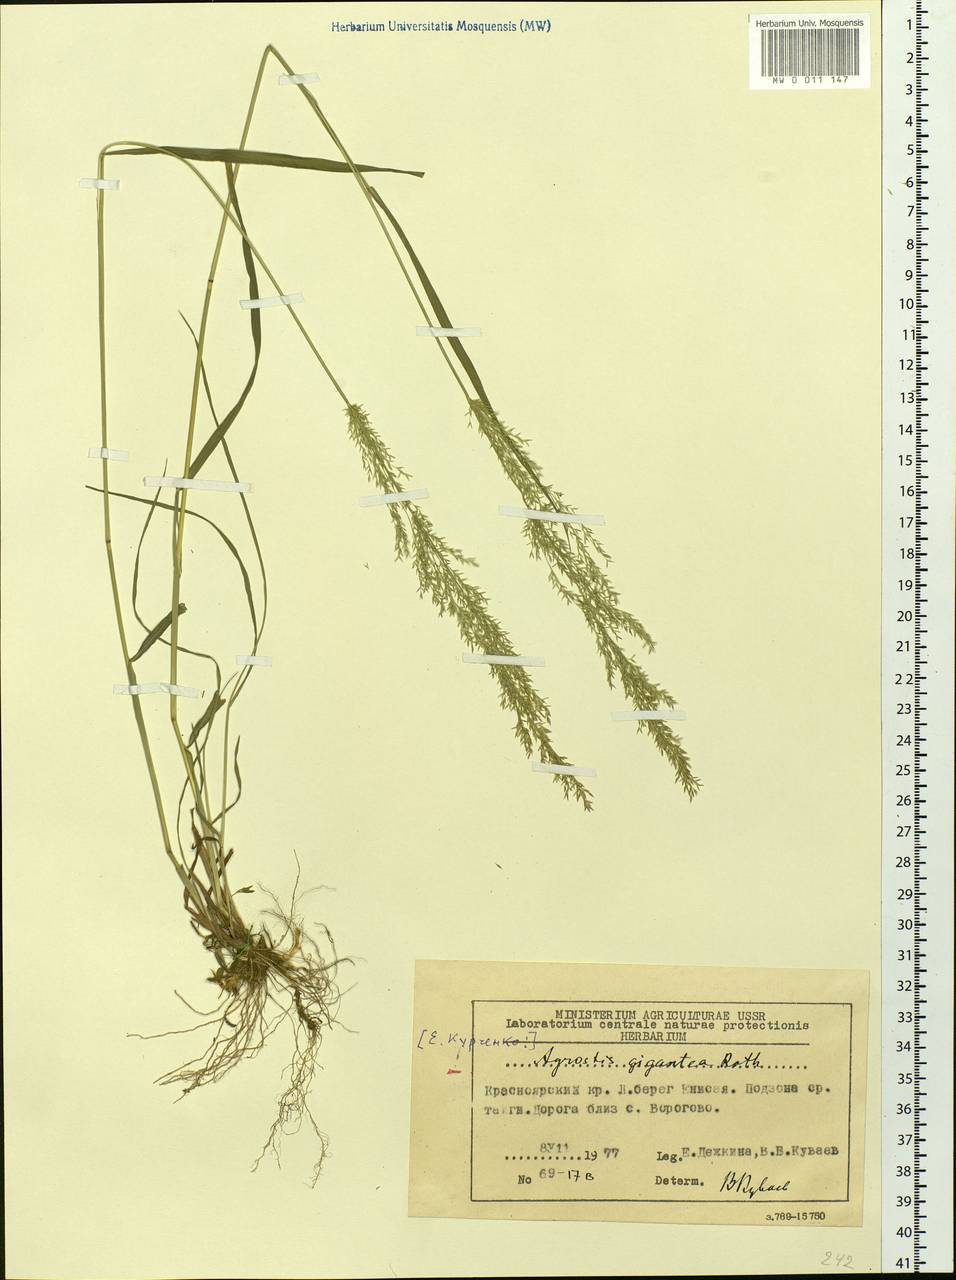 Agrostis gigantea Roth, Siberia, Central Siberia (S3) (Russia)